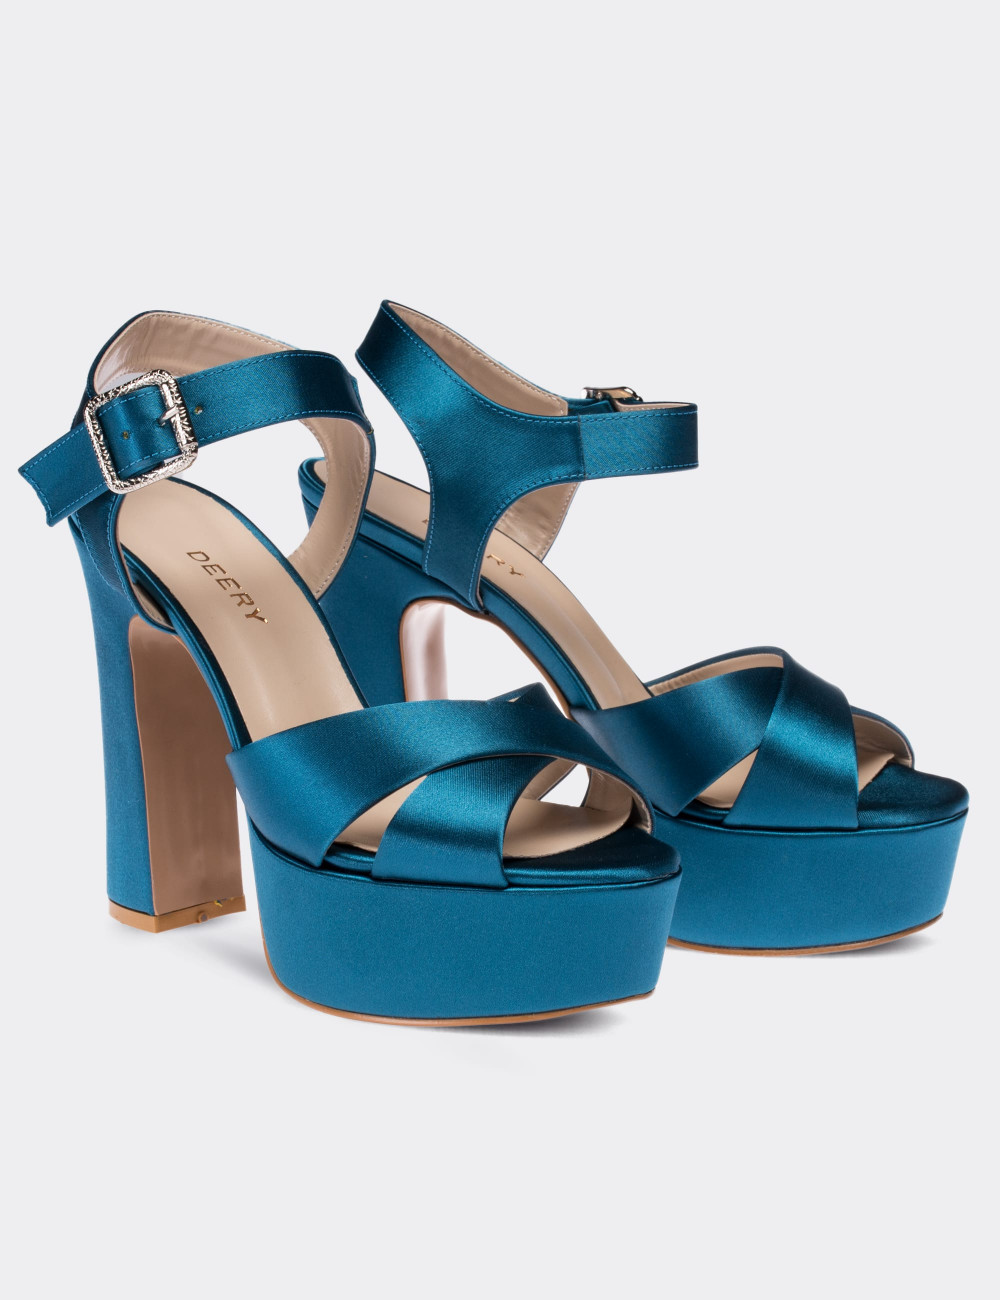 Mavi Saten Abiye Topuklu Kadın Ayakkabı - C0700ZMVIM01